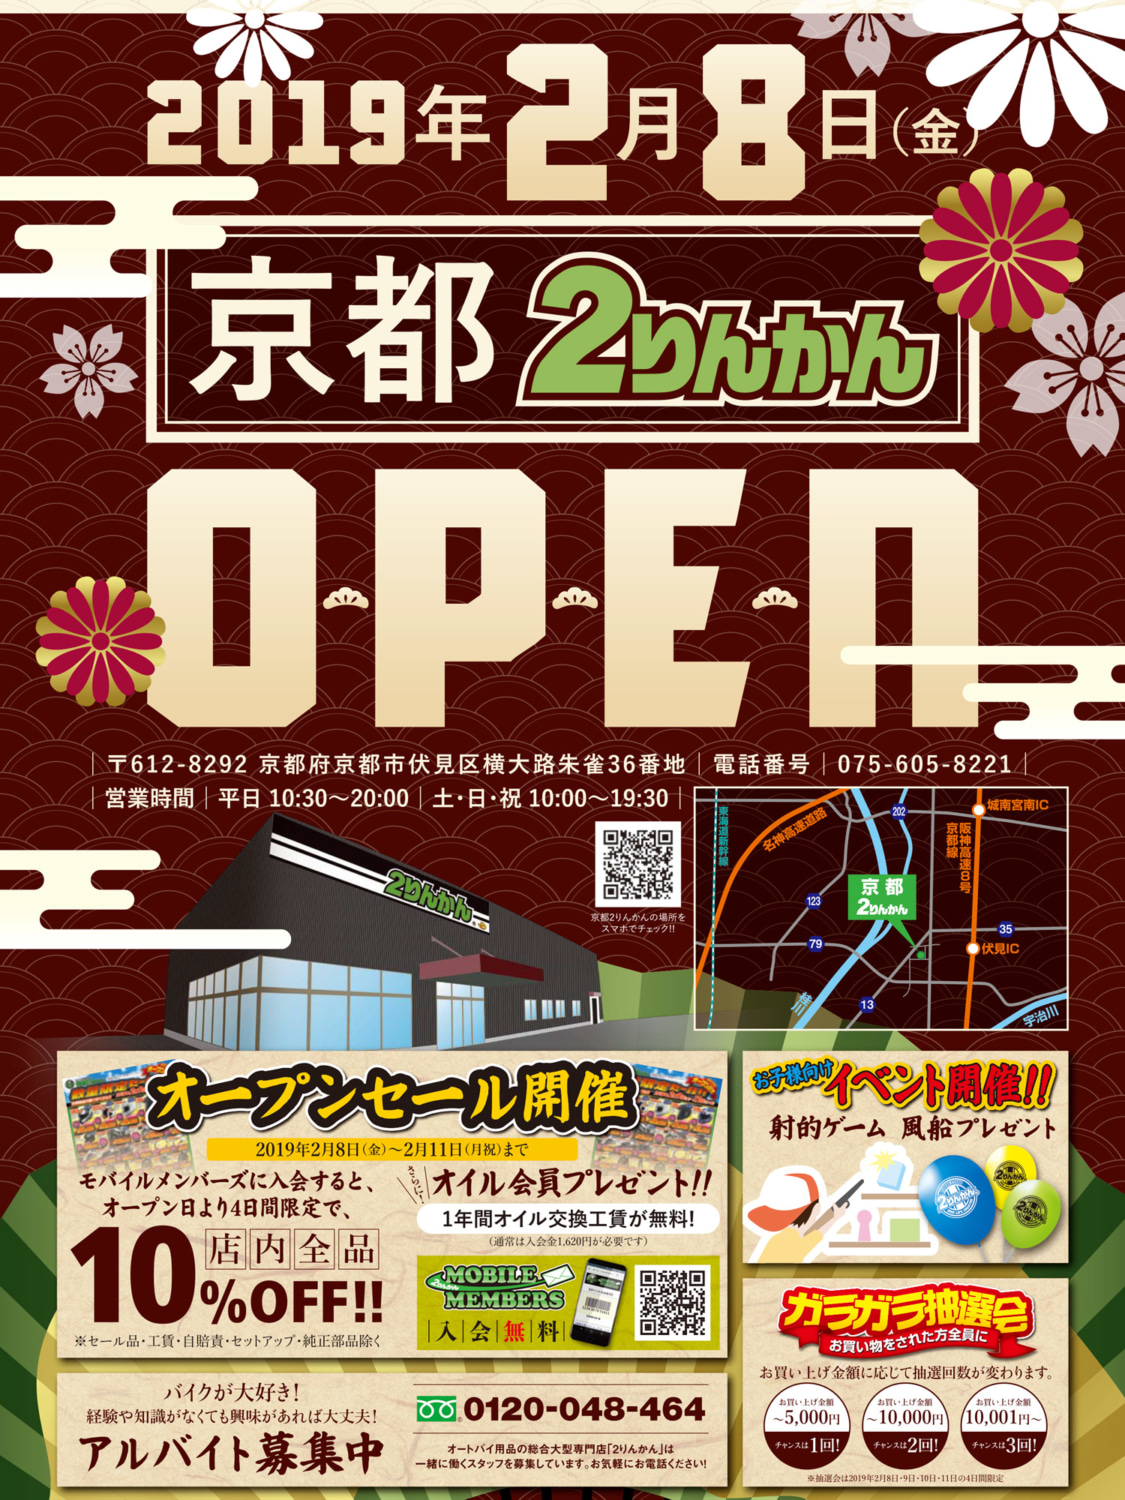 京都 2りんかんが19年2月8日にオープン 4日間限定で店内全品10 オフセールなどを実施 バイクニュース タンデムスタイル